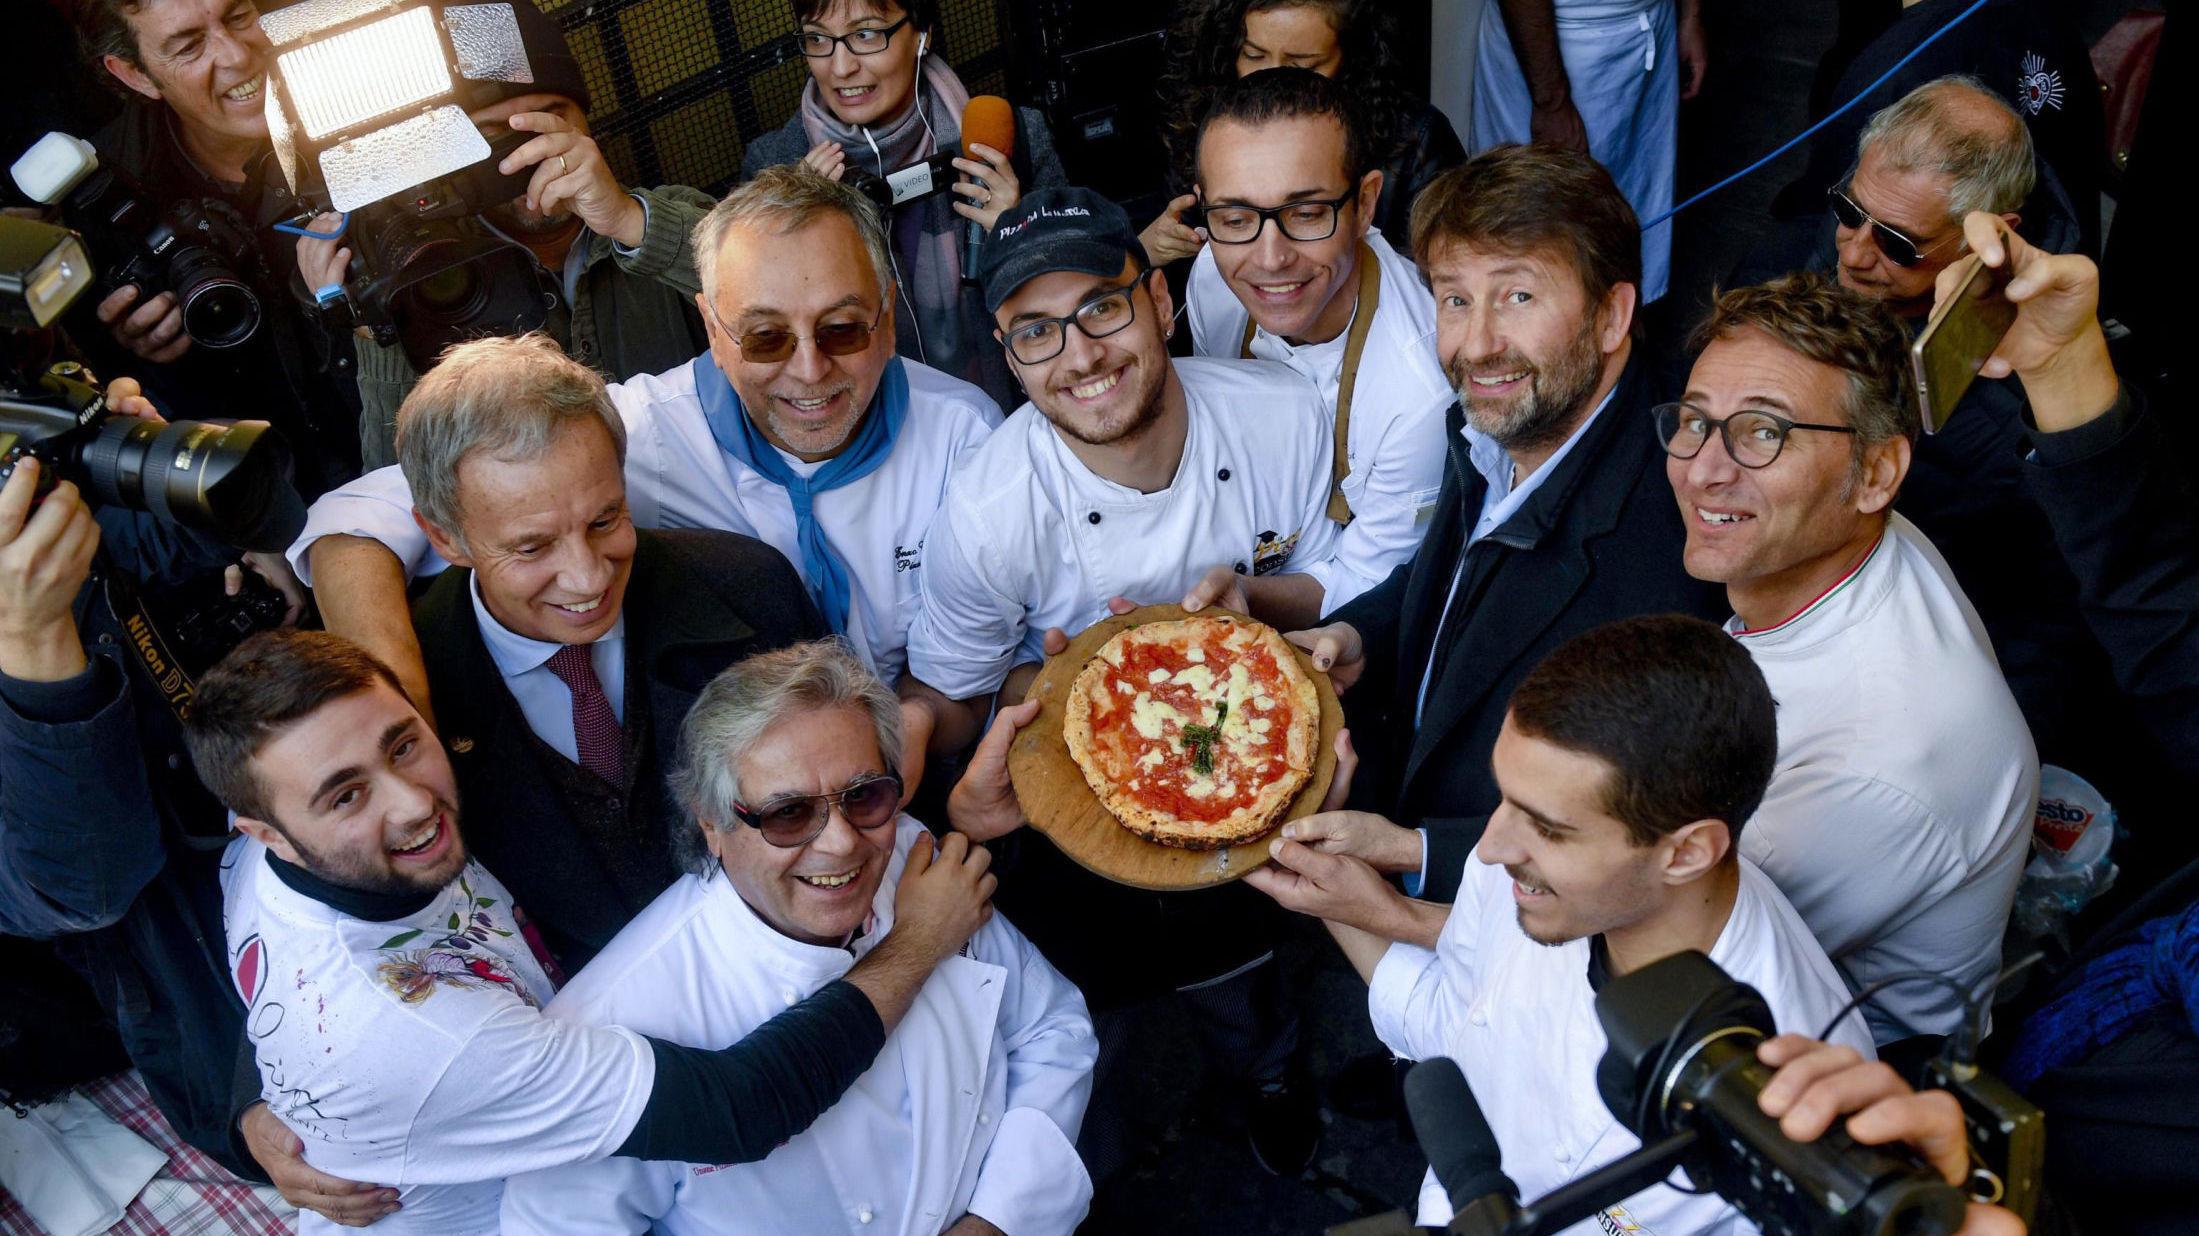 KULTURARVSPIZZA: Italias kulturminister Dario Franceschini, andre fra høyre, holder en pizza bakt i den første steinovnen som ble brukt i 1889 til å lage den første pizza margaritaen i Napoli. Napolis pizzatradisjon har blitt lagt til i UNESCOs liste over immateriell kulturarv. Foto: Ciro Fusco/ANSA Via AP/NTB scanpix